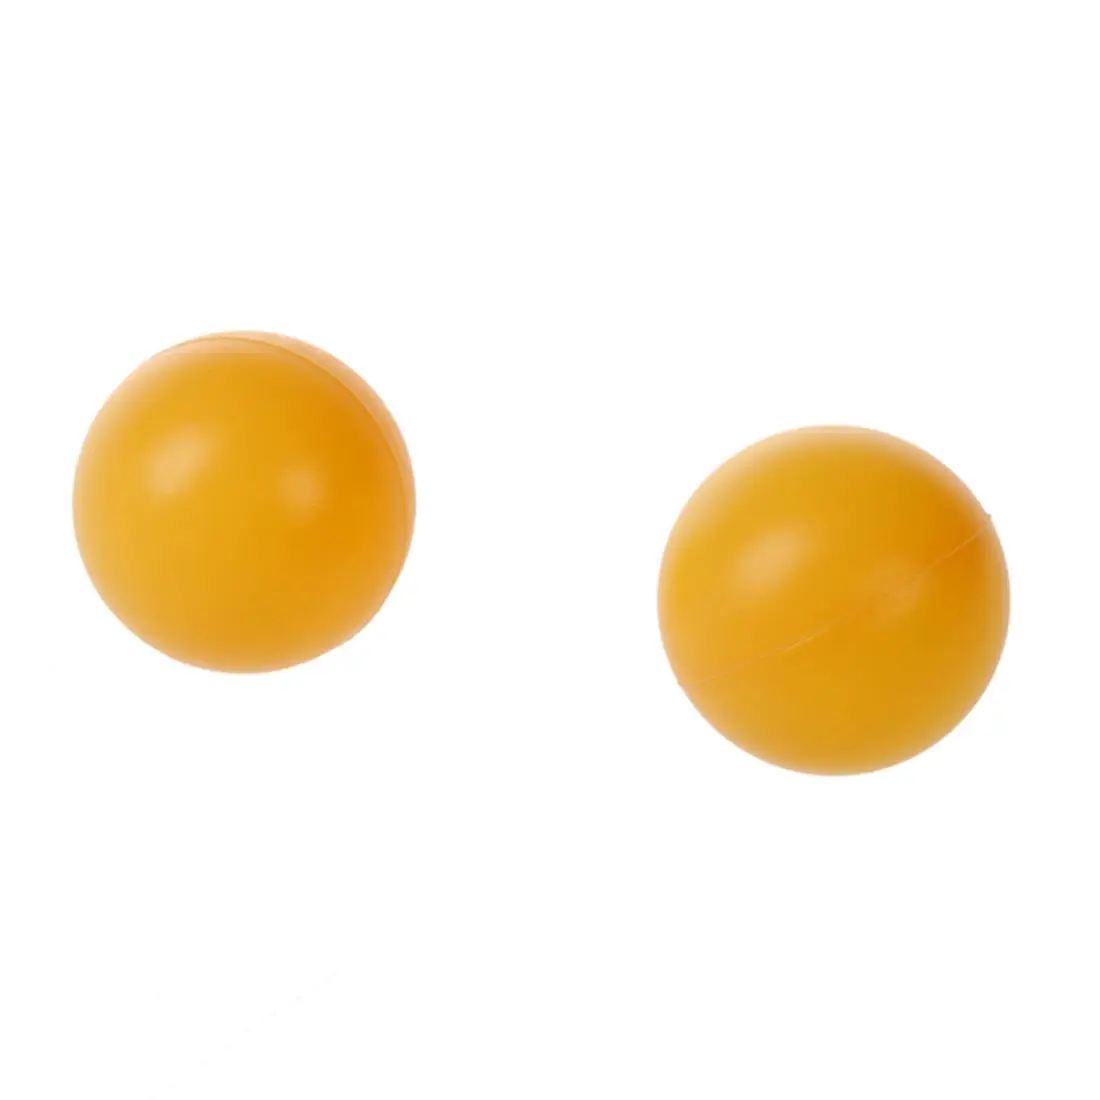 Белый желтый 39 мм Диаметр спортивные мячи для настольного тенниса мячик для Пинг-Понга 6 шт